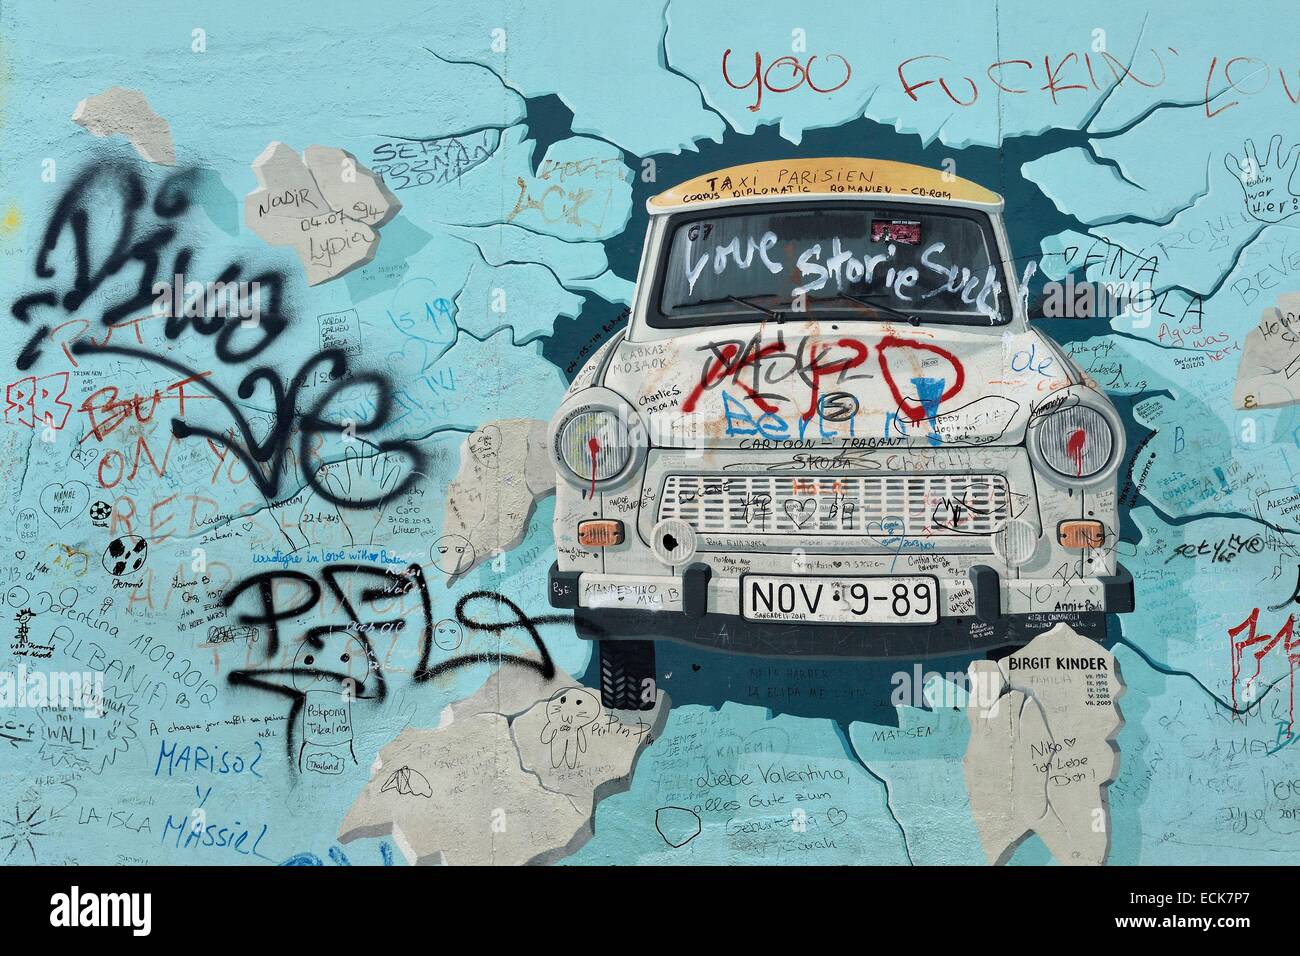 Allemagne, Berlin, Friedrichshain-Kreuzberg, East Side Gallery, le mur, le travail par Birgit Kinder datant des années 1990, rénové en 2009, ce qui représente une Trabant arrivant à Berlin Est, intitulé le meilleur Test Banque D'Images